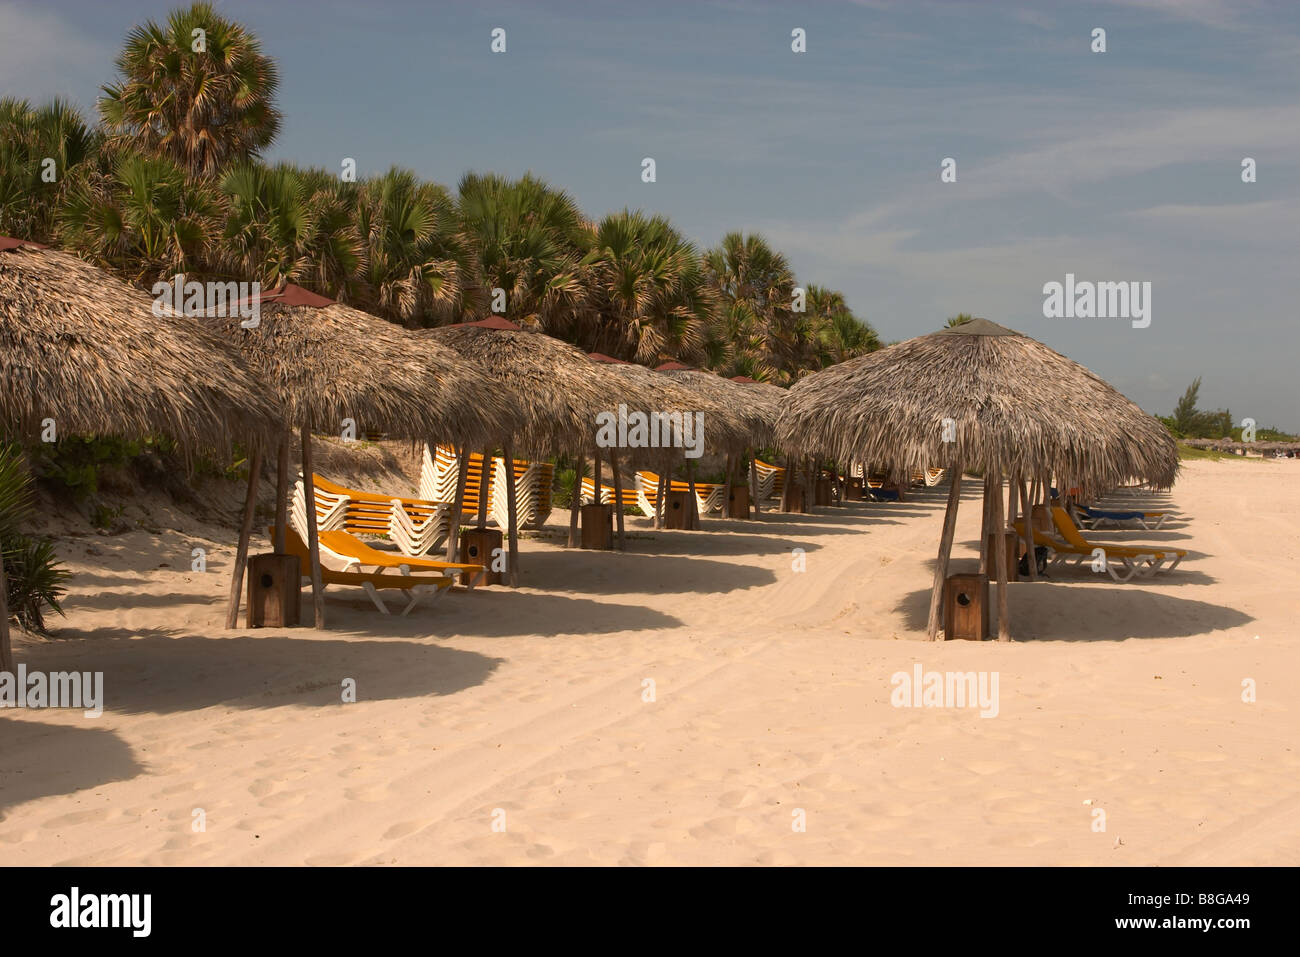 Sonnenschutz Betten und Sonne Sonnenschirme am Strand Varadero Kuba  Stockfotografie - Alamy